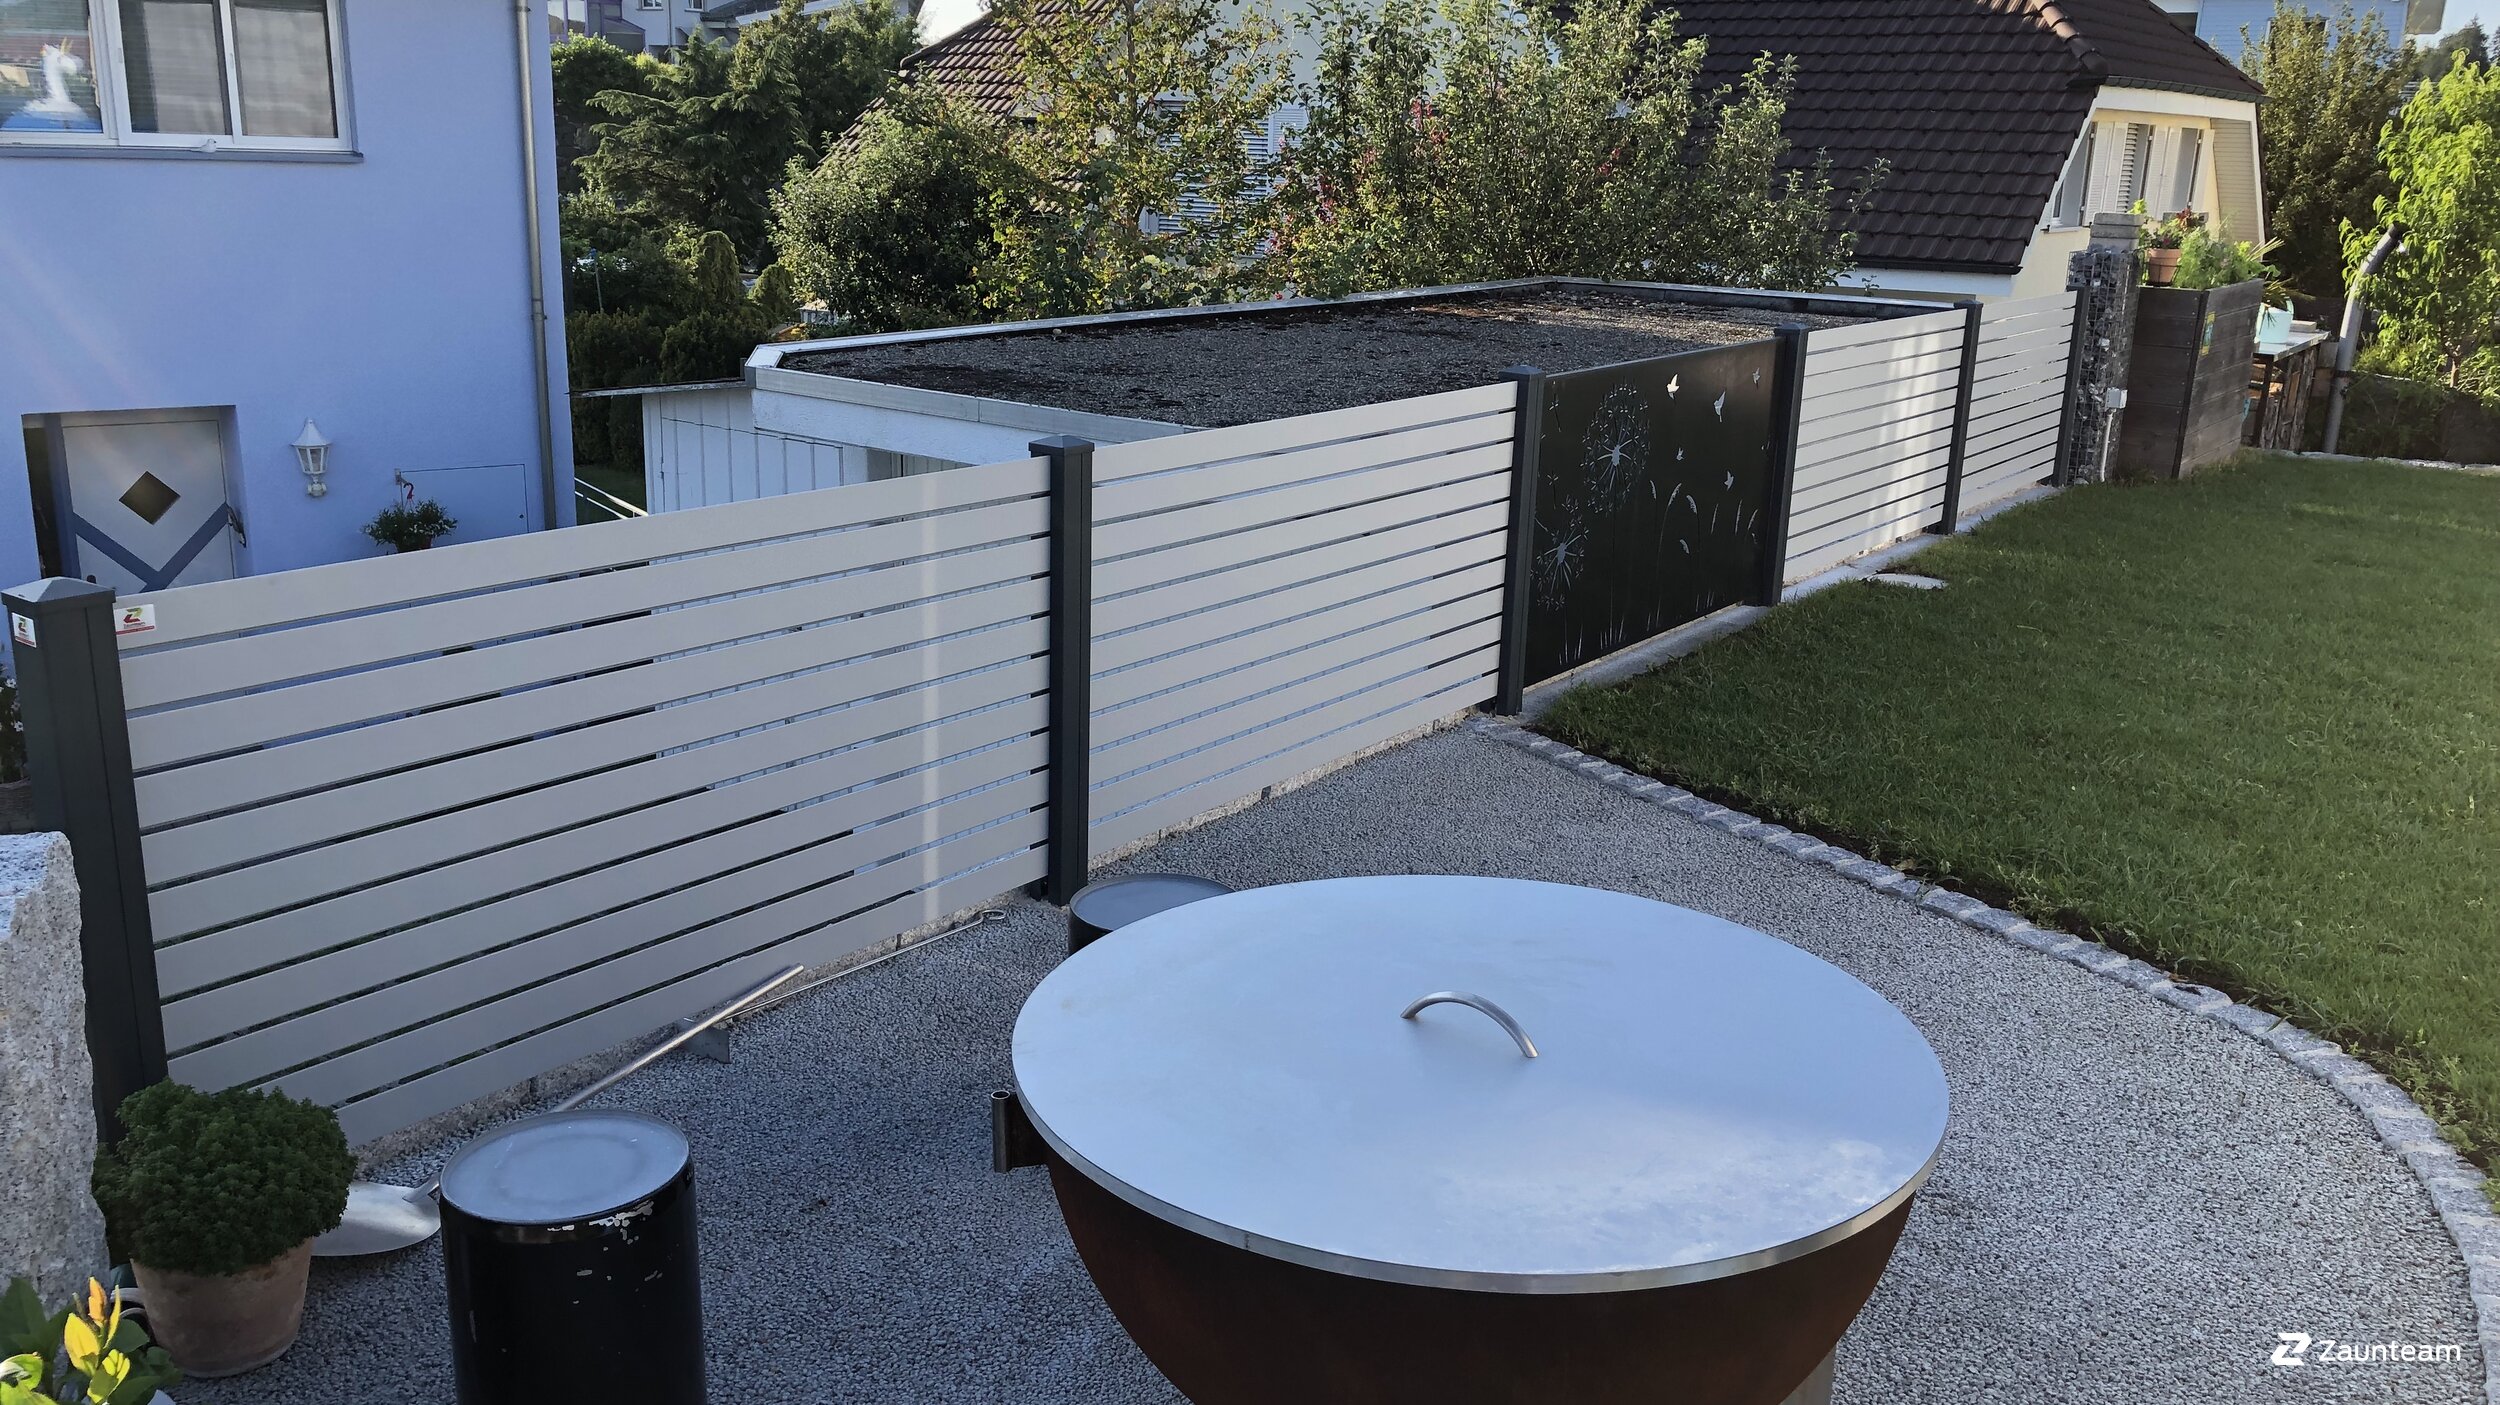 Protection brise-vue en aluminium de 2019 à 9200 Gossau Suisse de Zaunteam Appenzellerland.